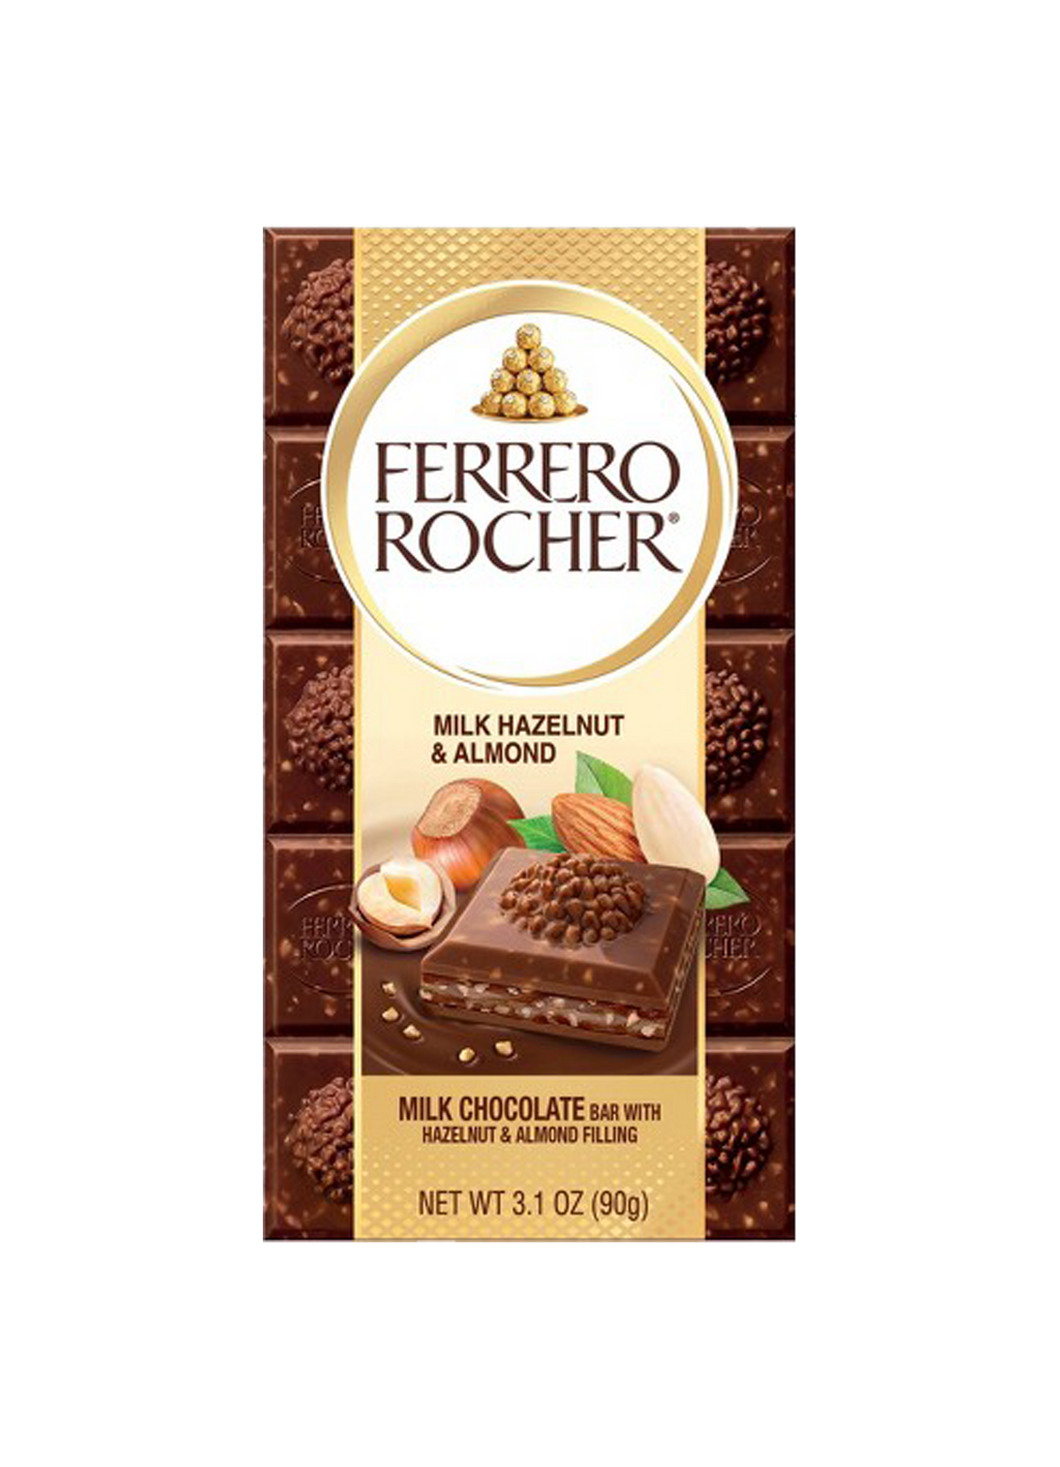 Ferrero Rocher Milk Hazelnut & Almond Chocolate Bar 90g